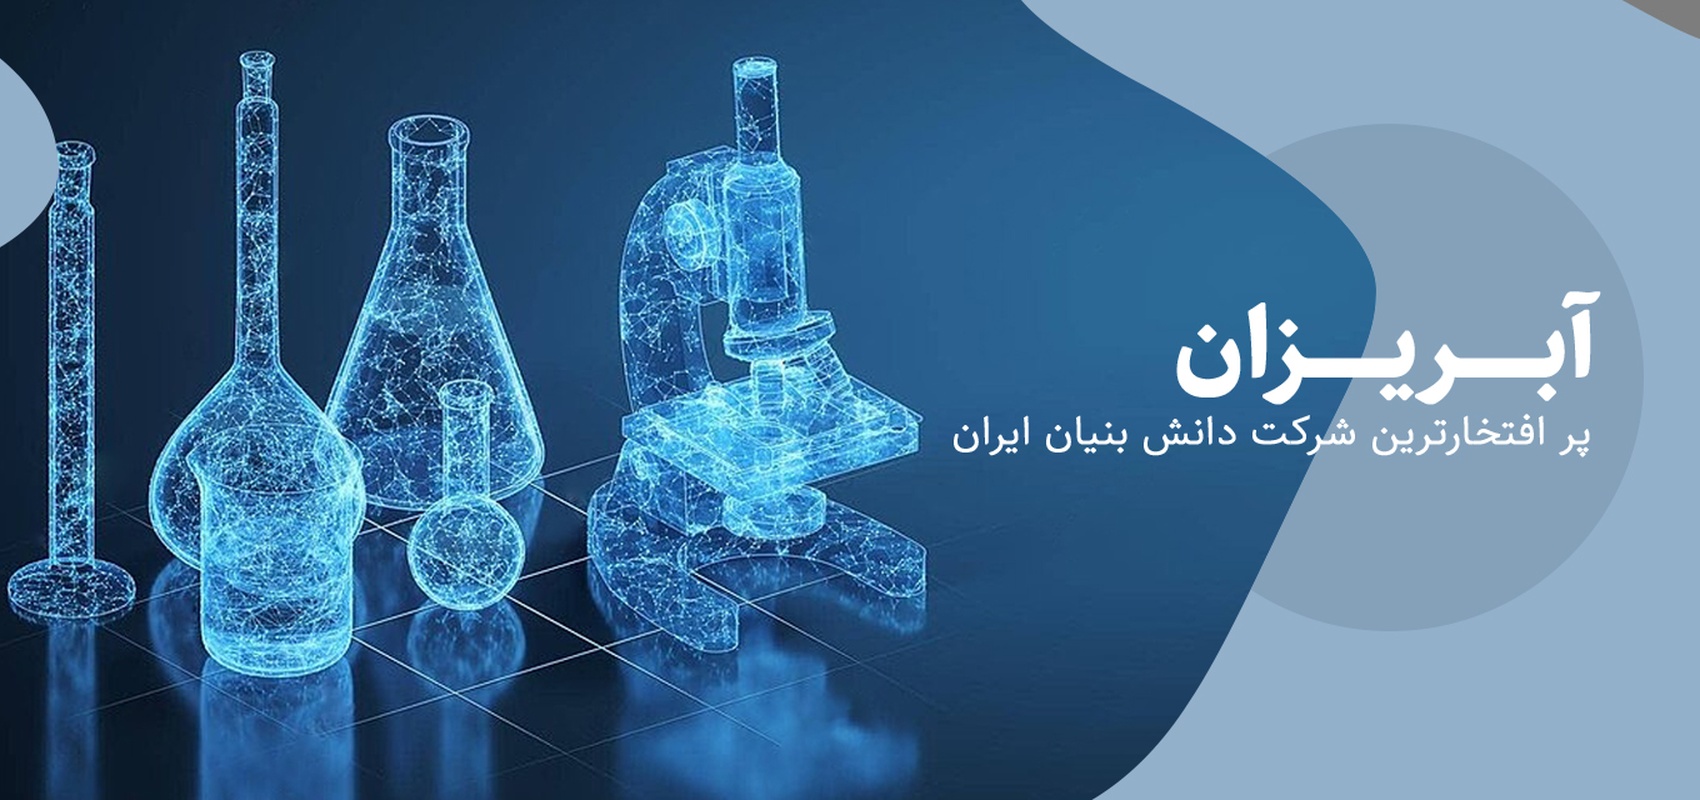 آبریزان پرافتخارترین شرکت دانش بنیان ایران